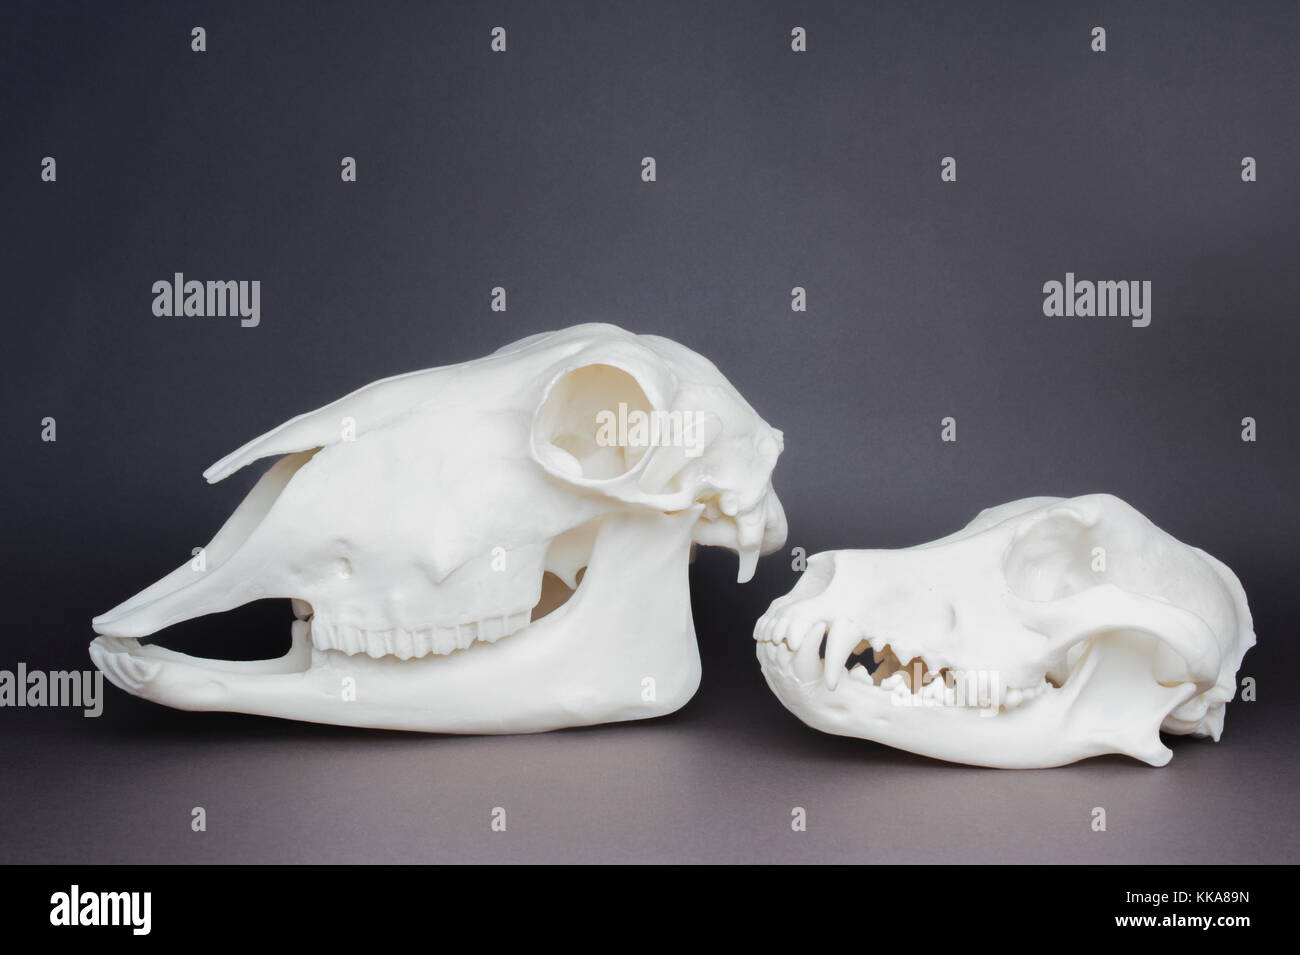 Hund und Schafe Schädel (Fleischfresser, Pflanzenfresser Schädel Vergleich), Zähne und Kiefer Struktur Stockfoto